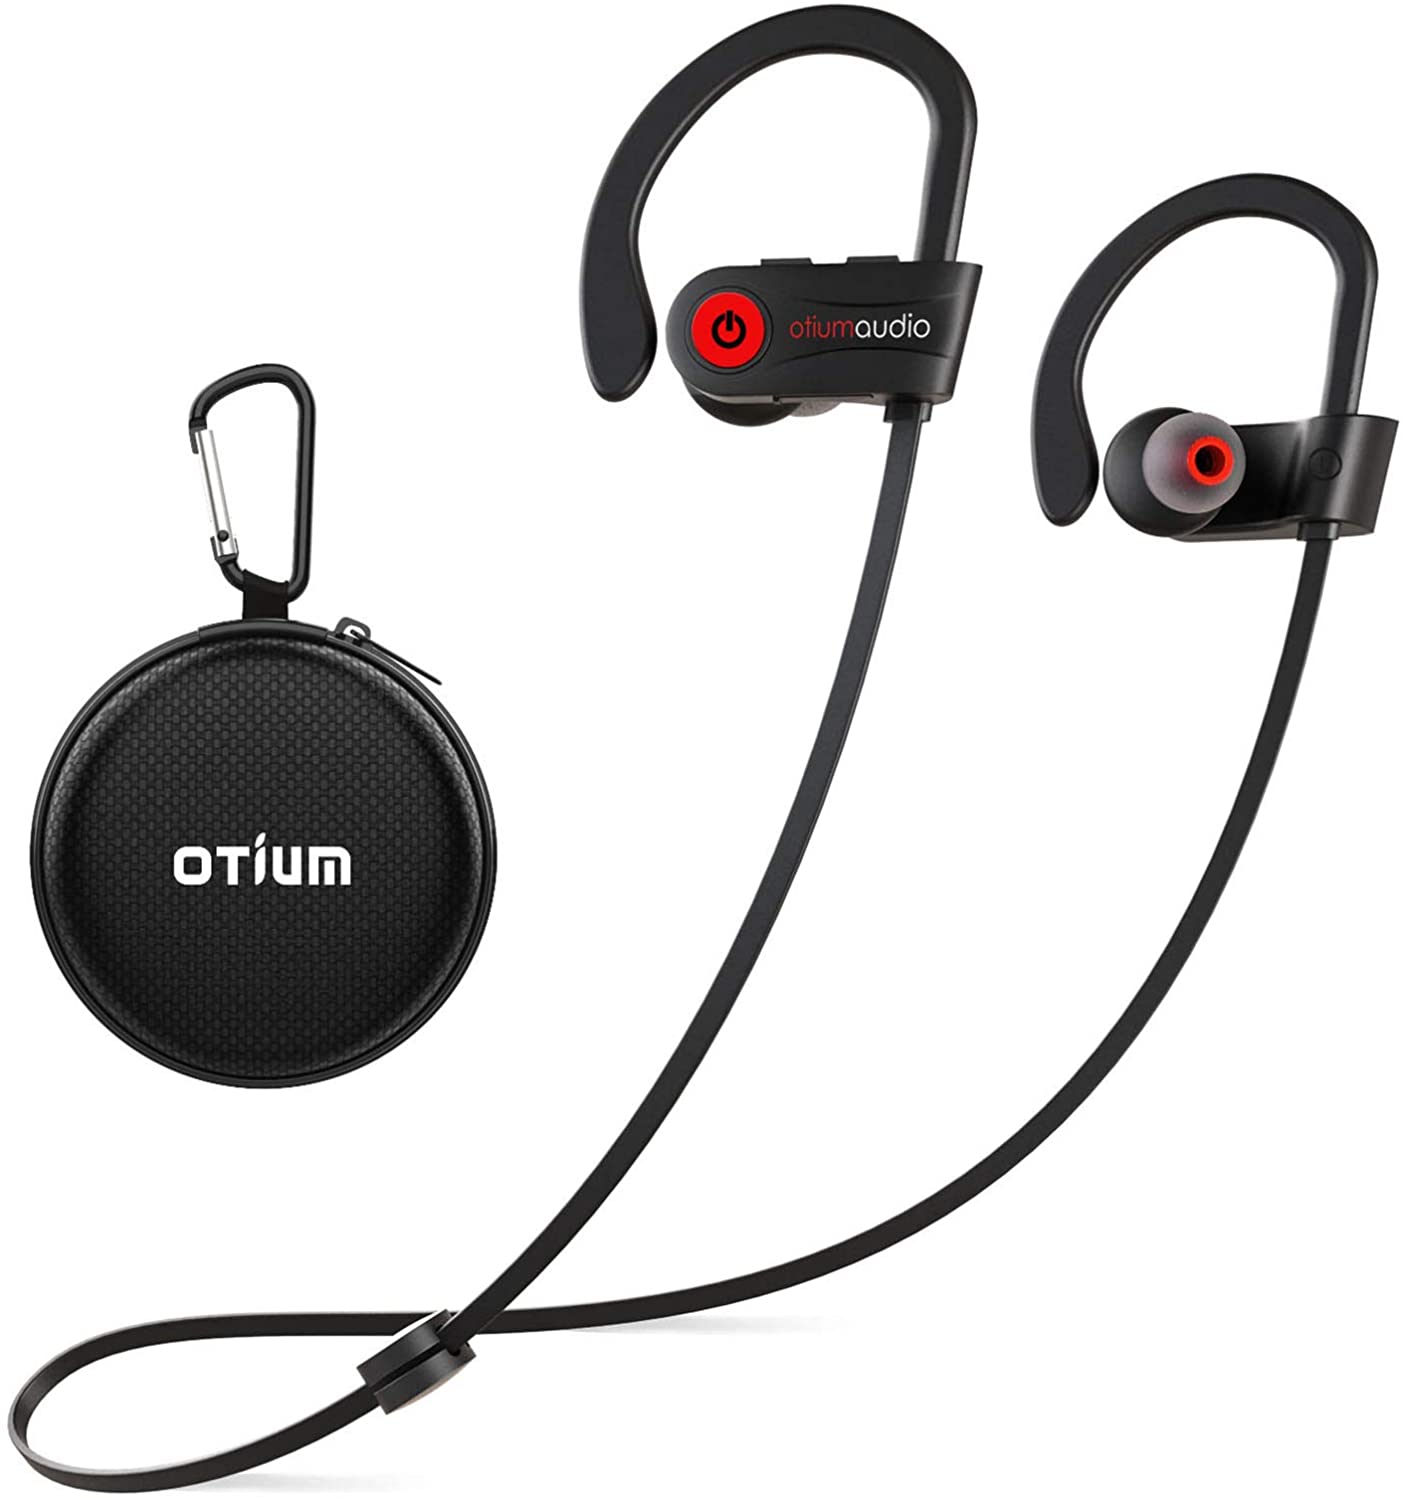 Otium Bluetooth Headphones Review 